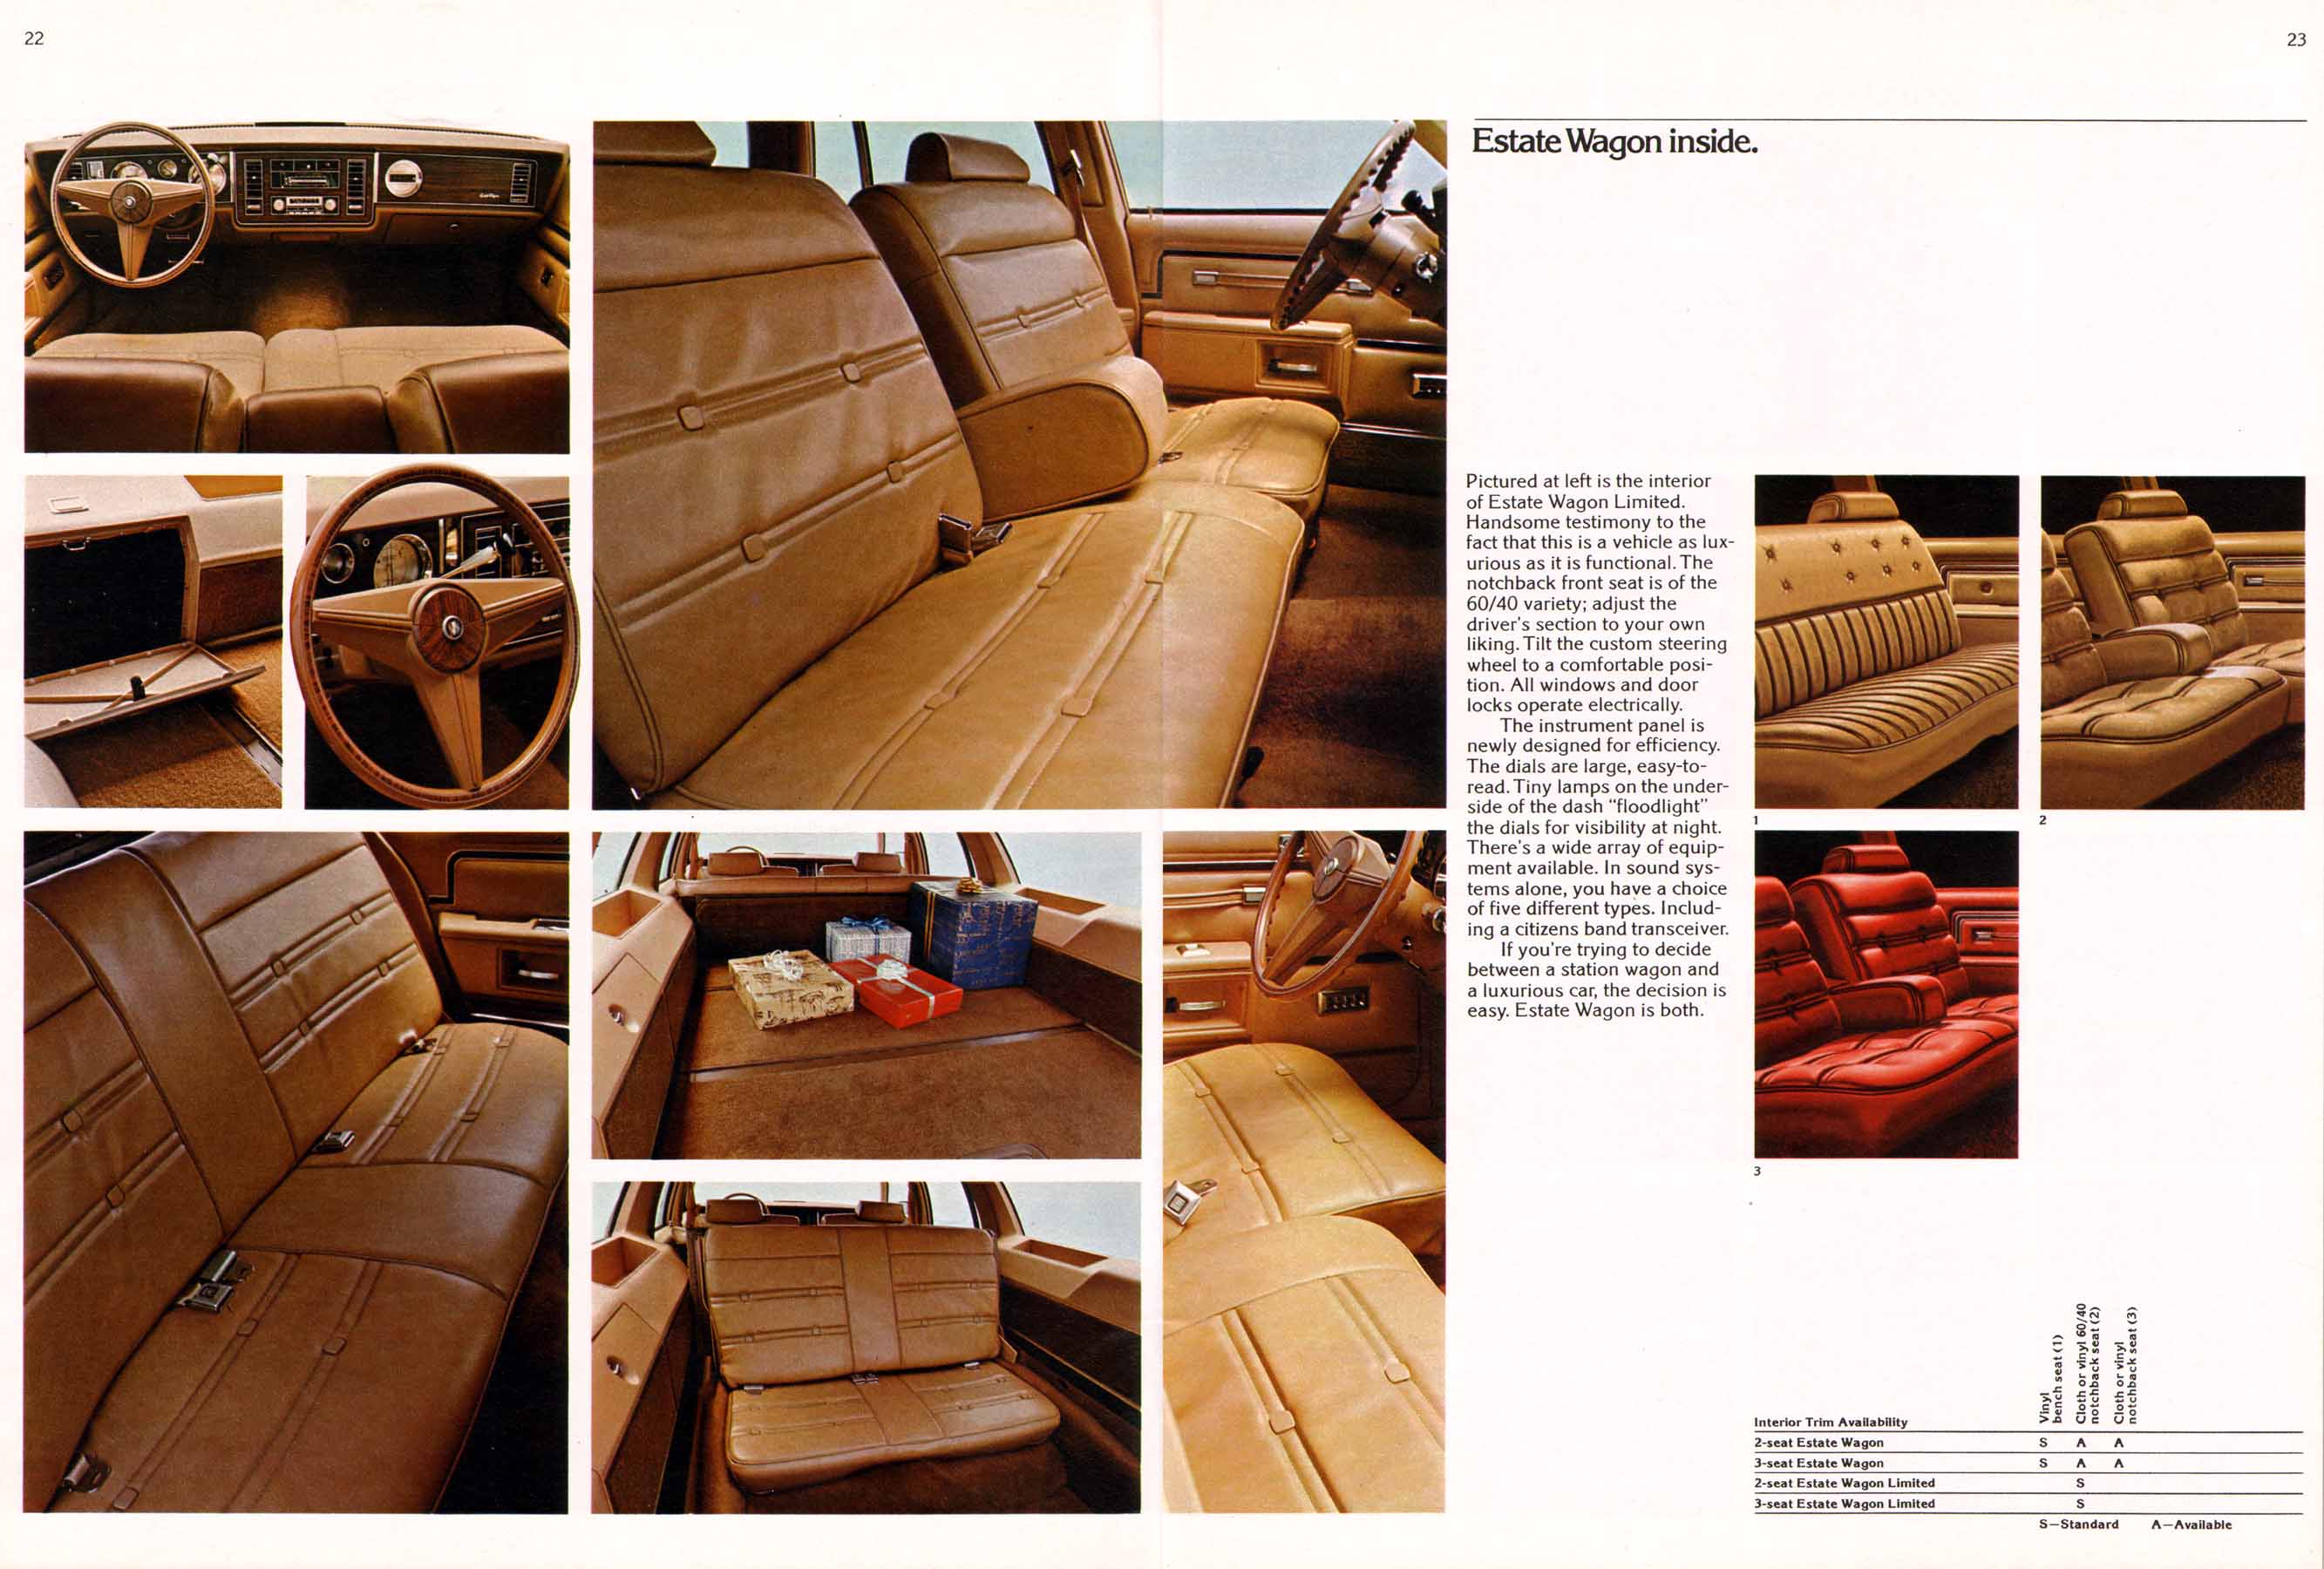 1977 Buick Full Line-22-23